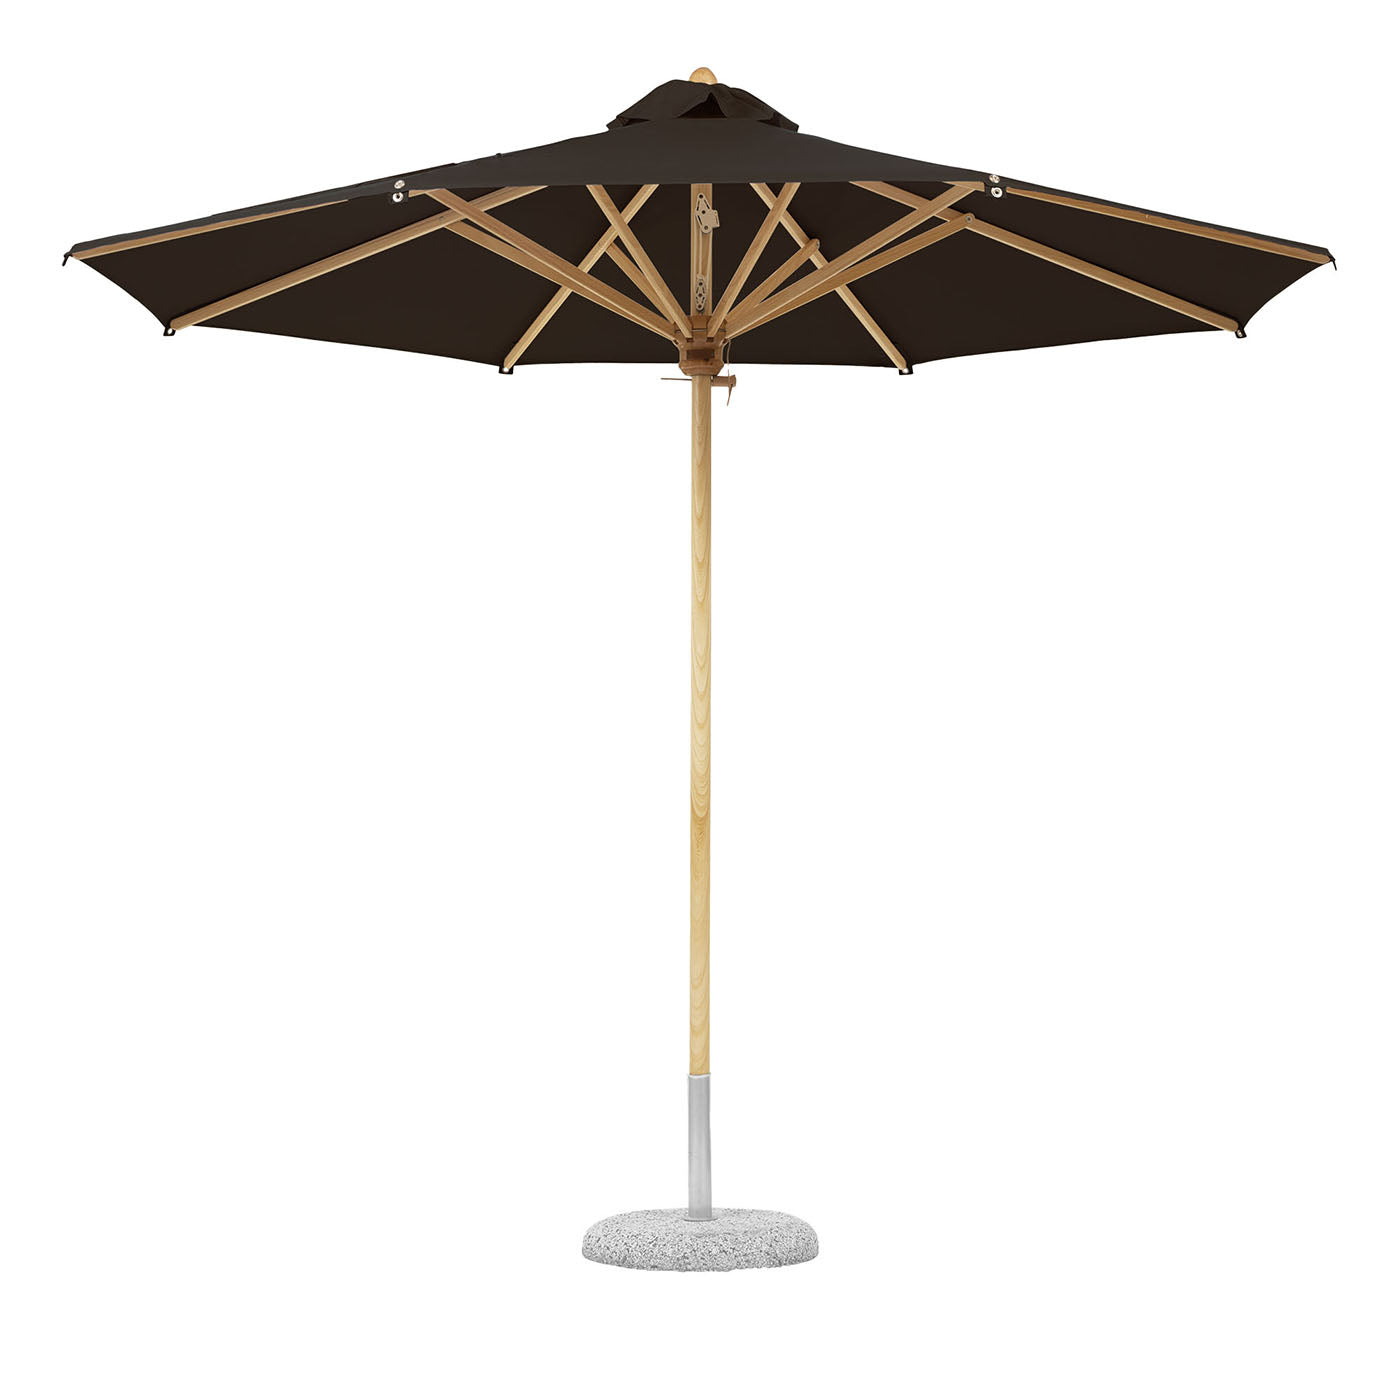 Paraguas redondo marrón oscuro para exteriores - Vista principal